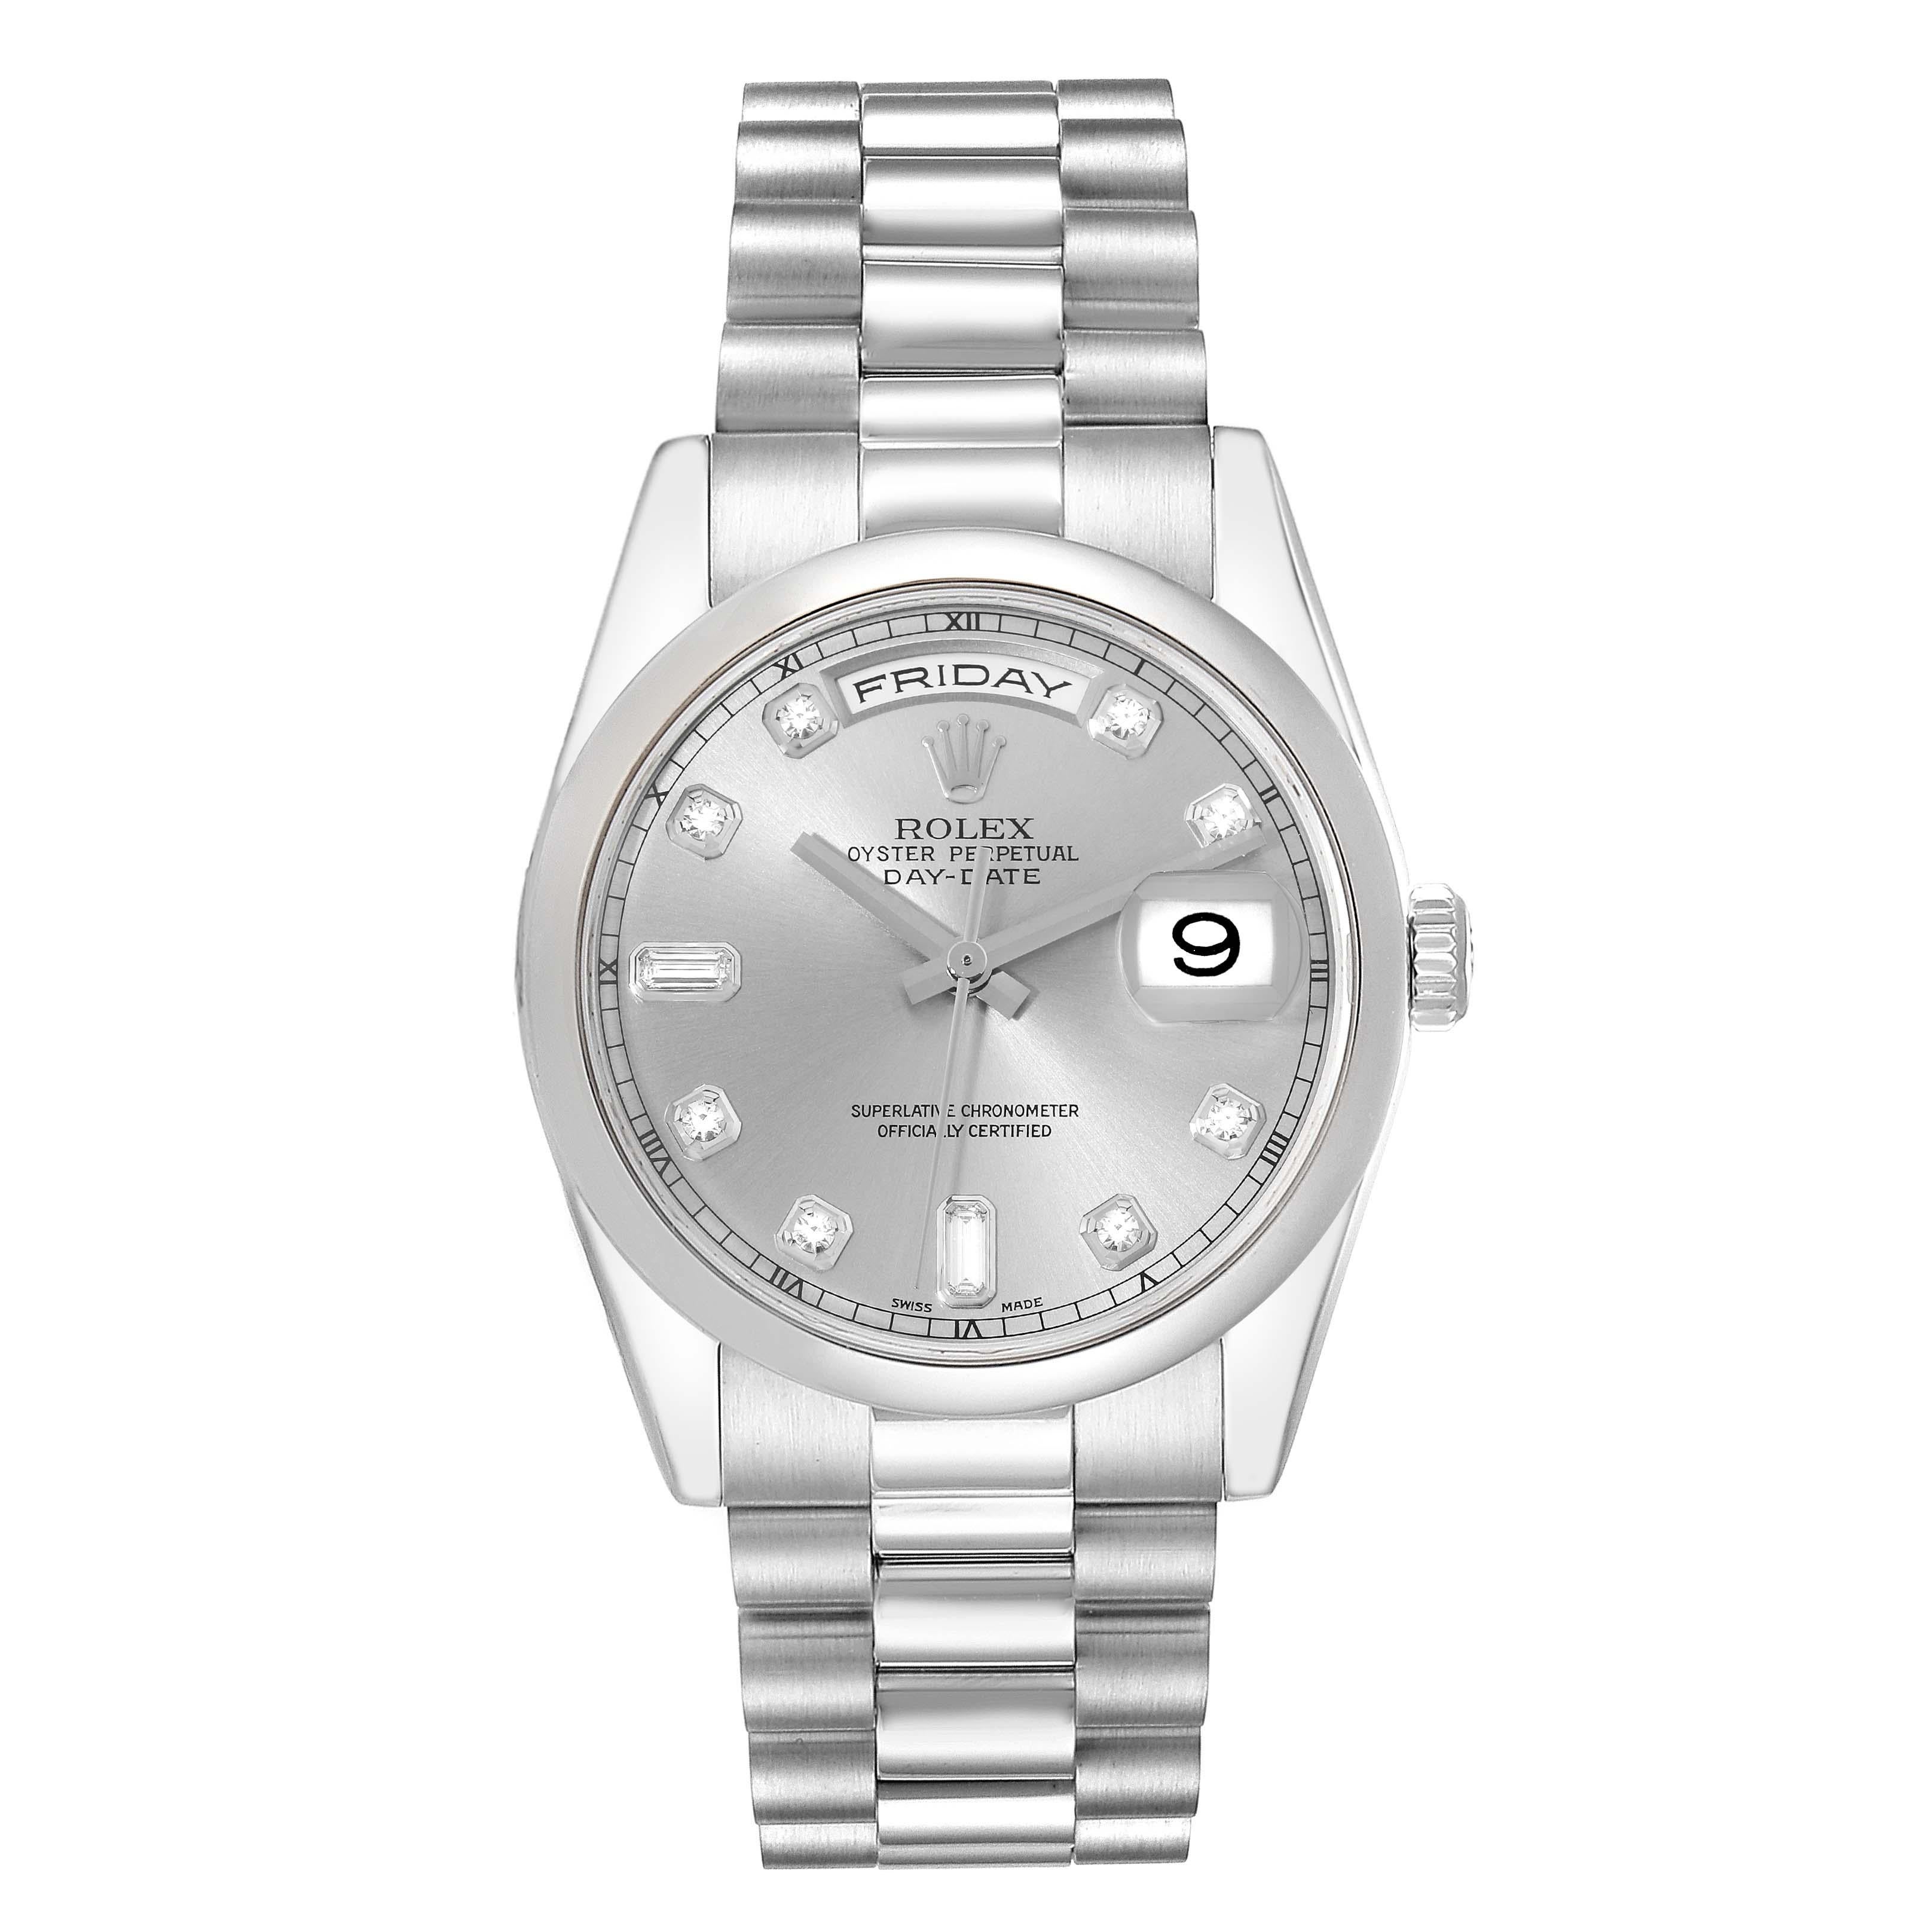 Rolex Day-Date President Diamond Dial Platinum Mens Watch 118206 Box Card. Mouvement automatique à remontage automatique, officiellement certifié chronomètre, avec fonction de date rapide. Boîtier oyster en platine de 36.0 mm de diamètre. Logo Rolex